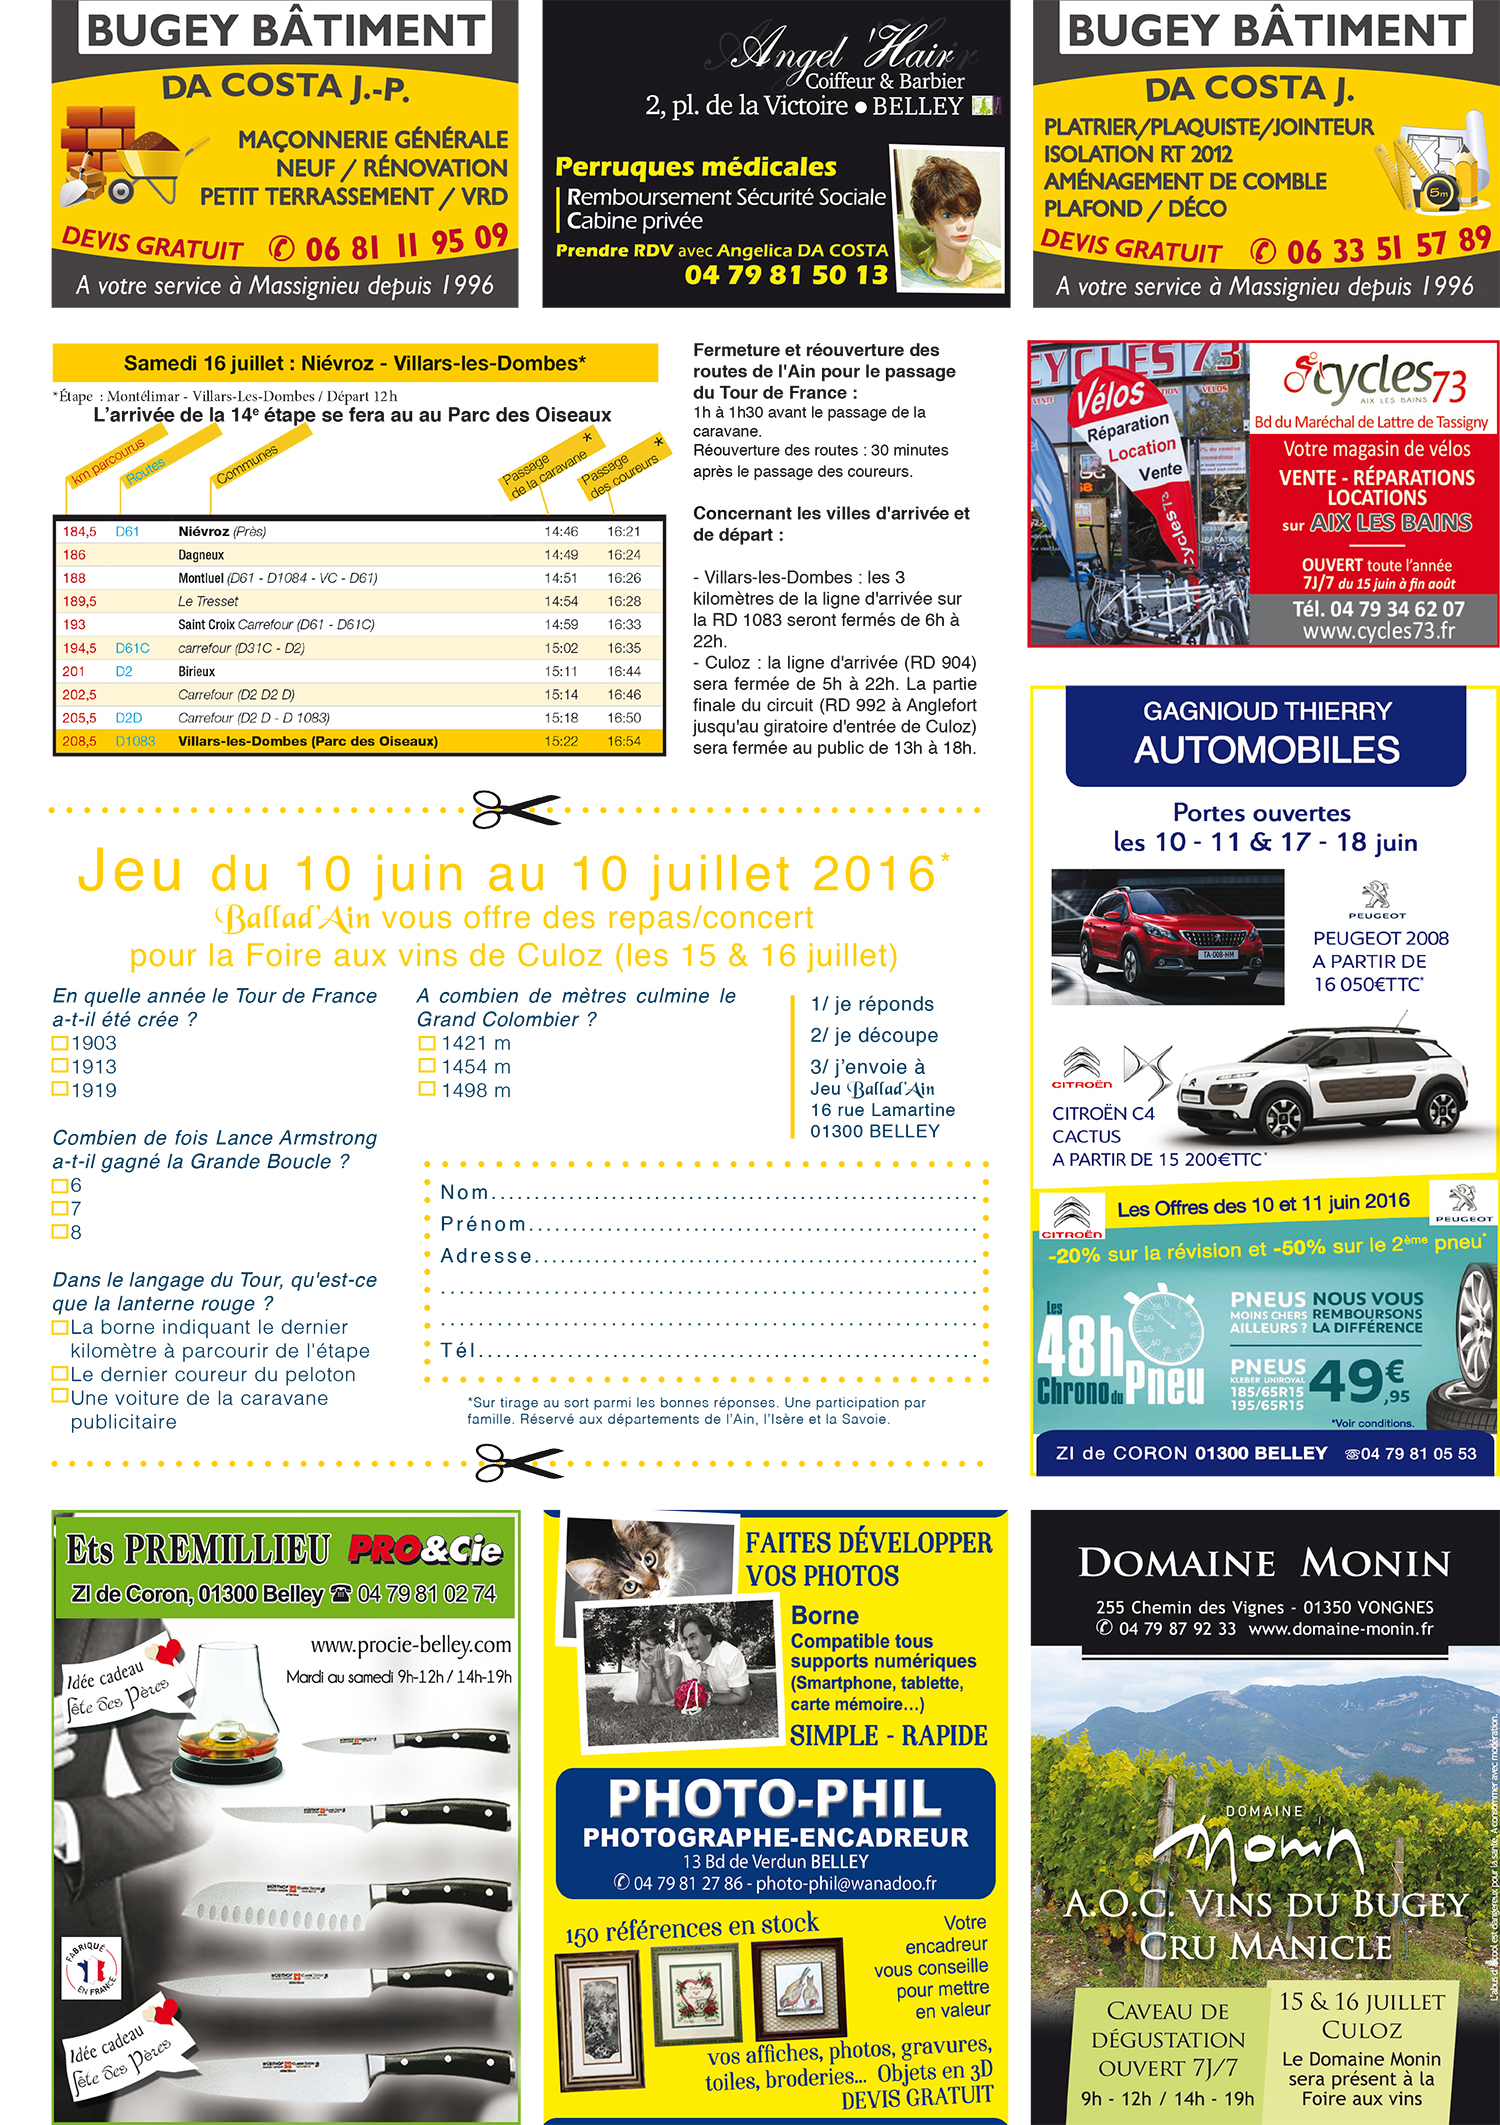 Page Tour de France 2016 2 ballad et vous